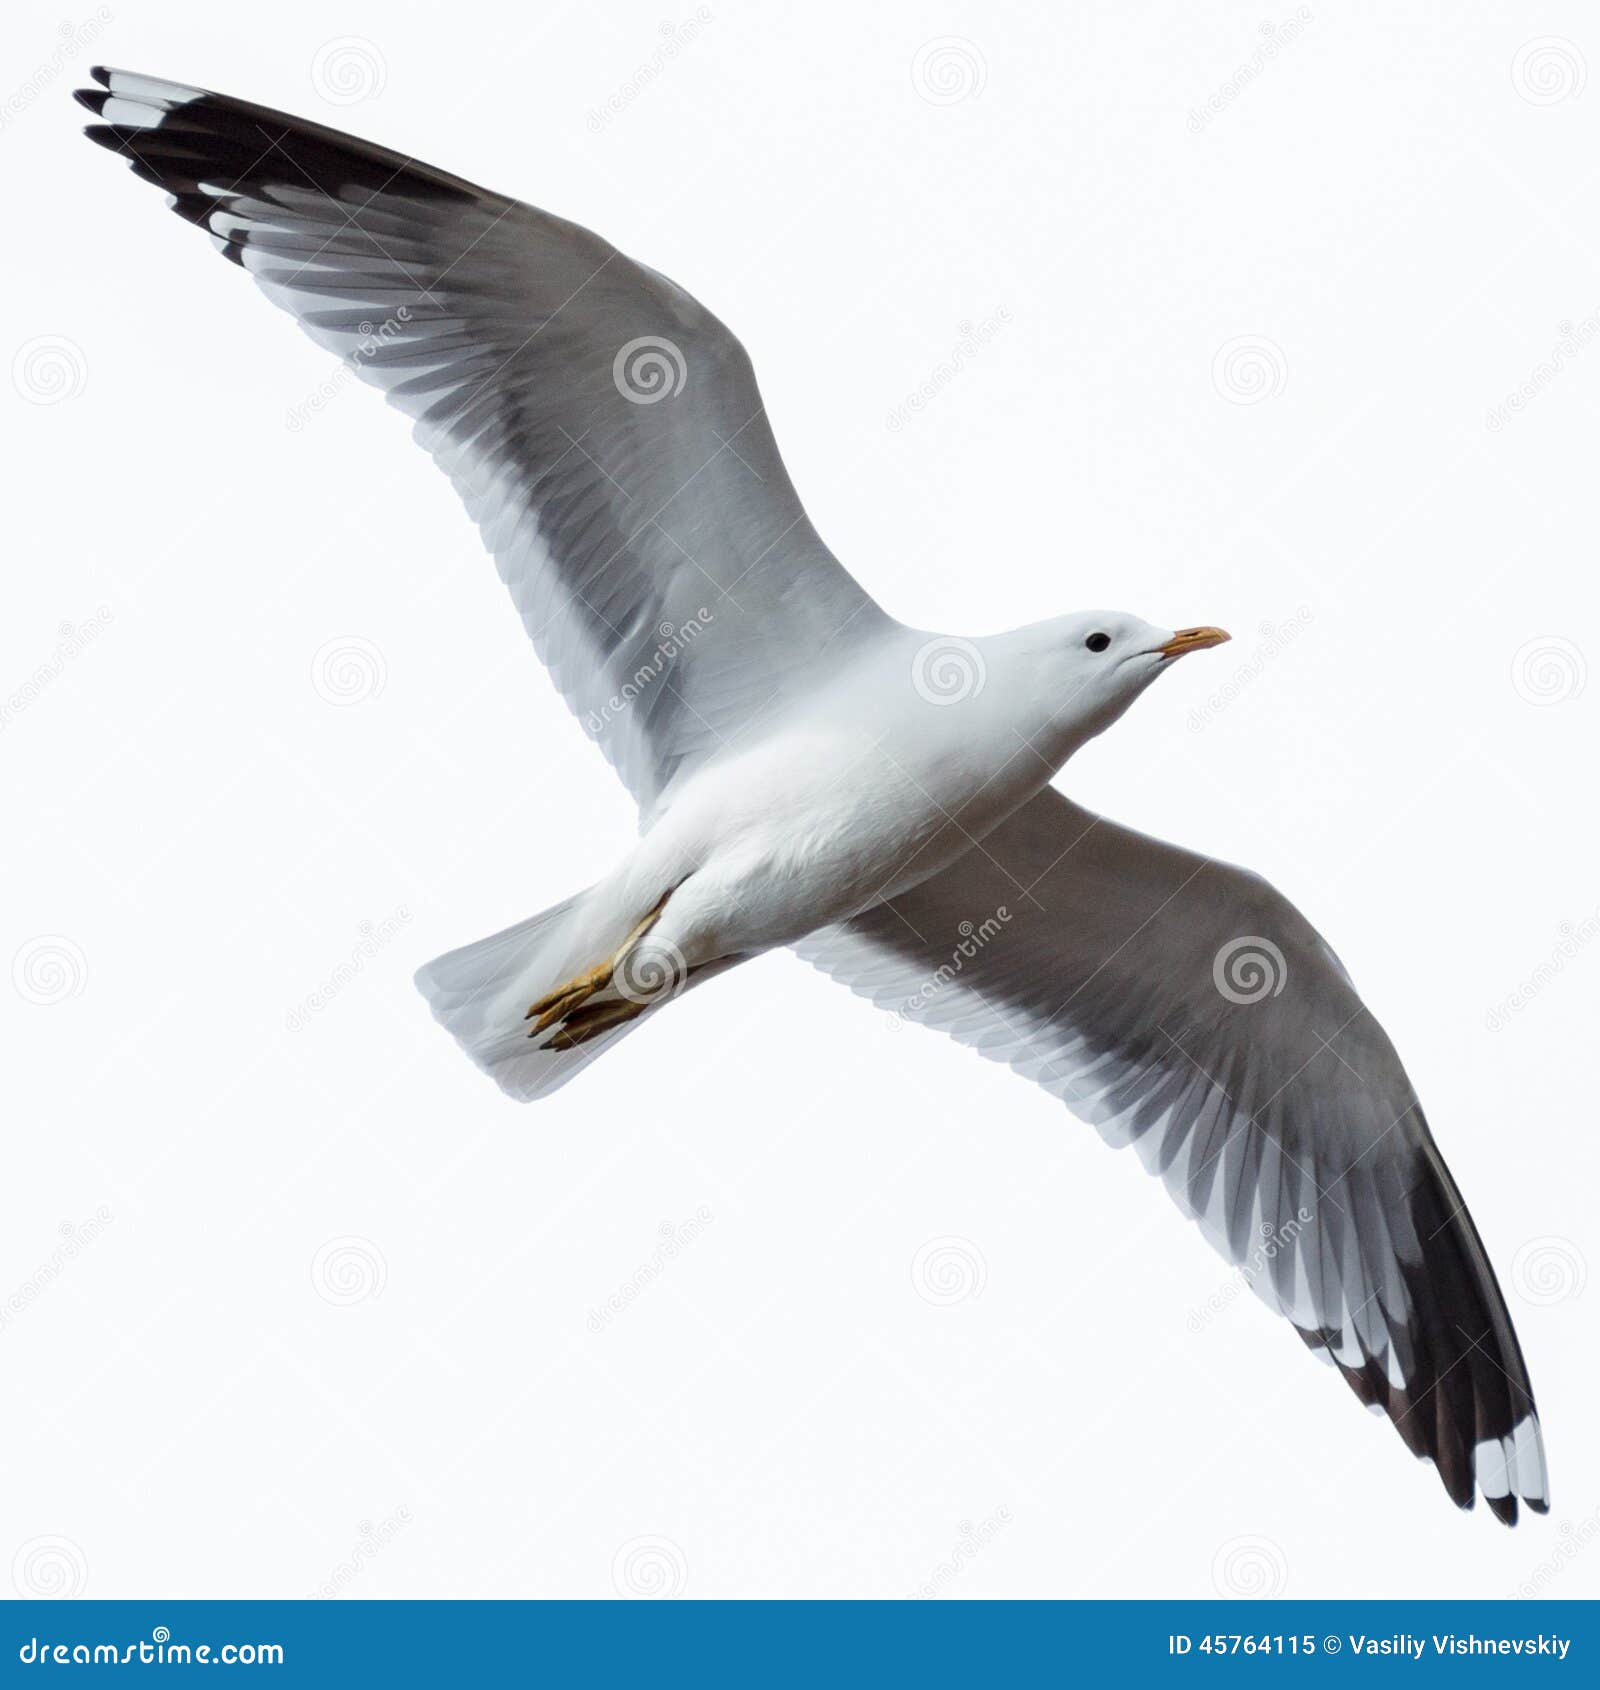 larus canus, common gull